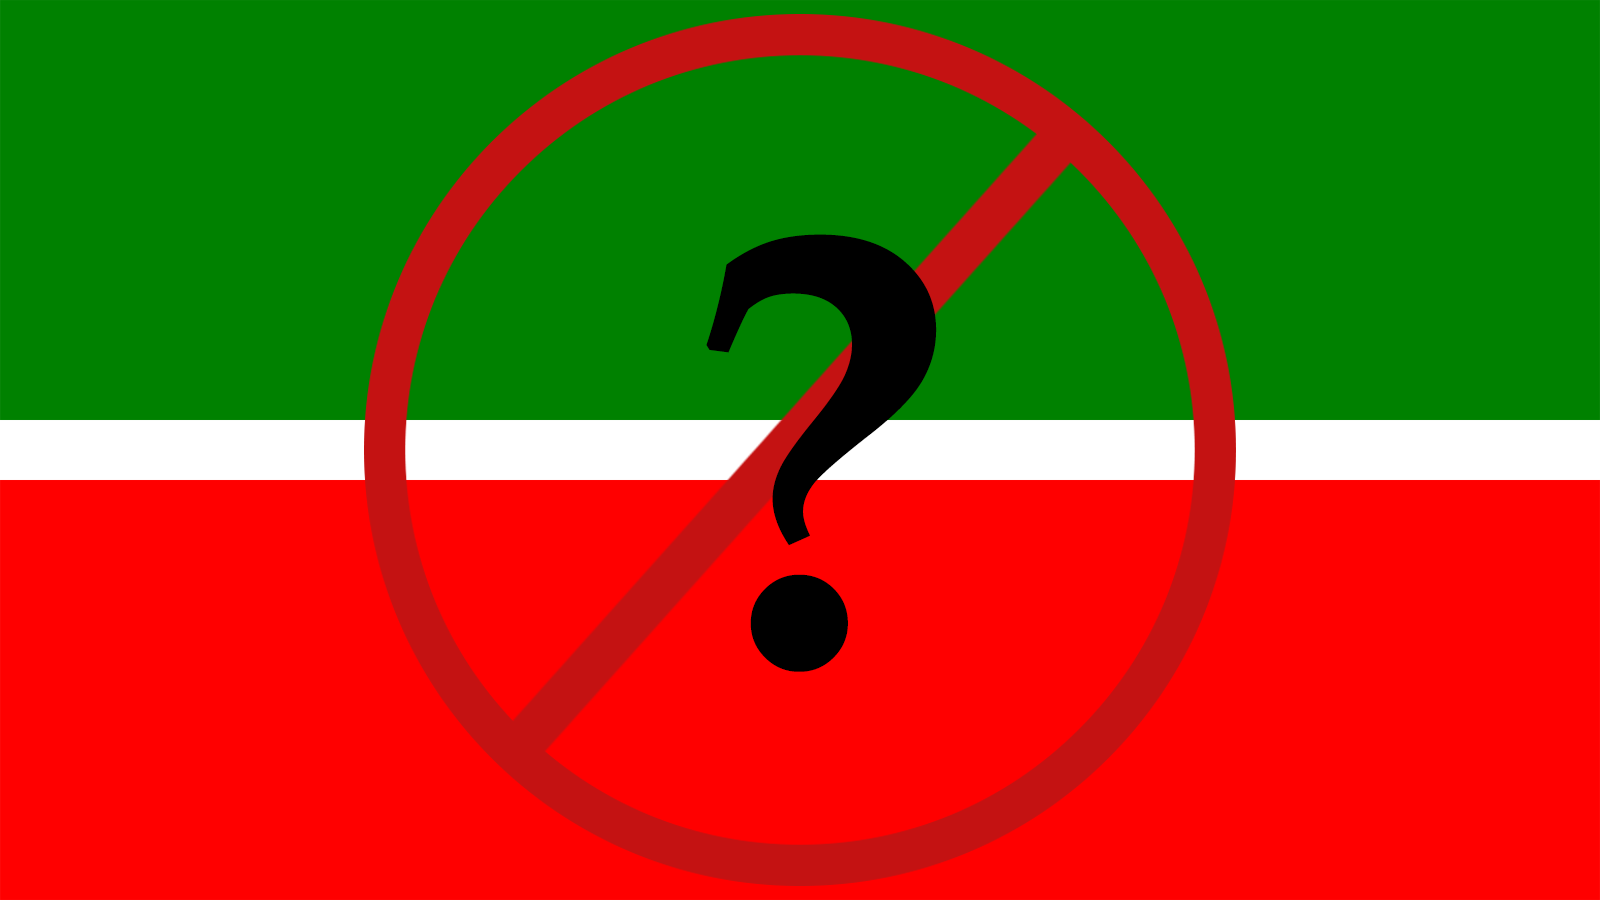 «Ликвидировали Конституционный суд РТ – на очереди, по всей видимости, сама Конституция Татарстана, а вслед за ней всего один шаг до ликвидации Республики»